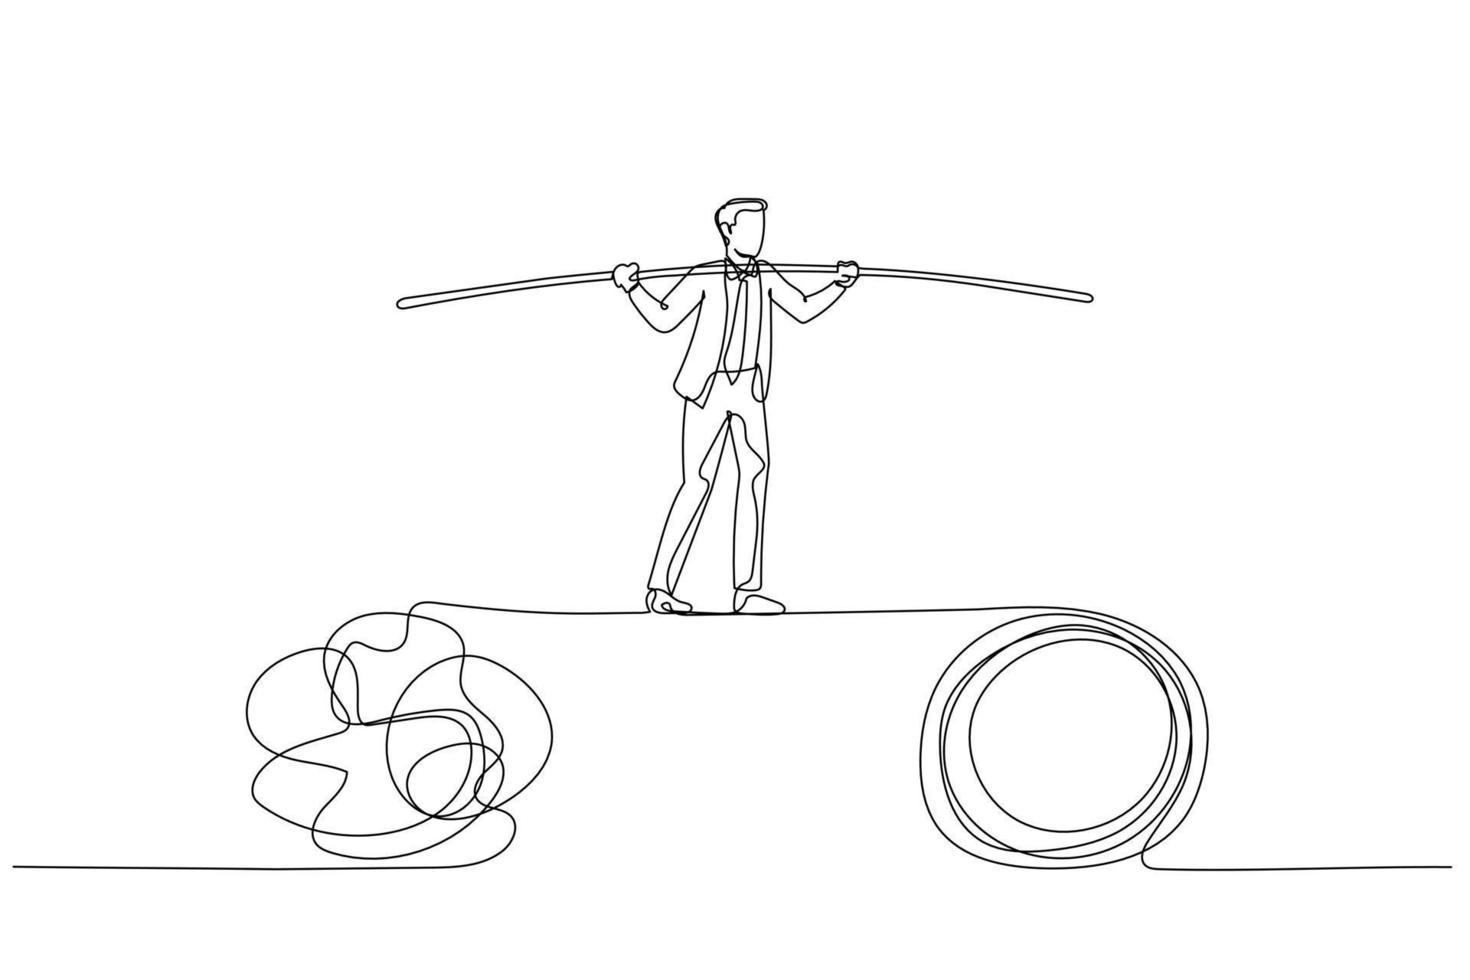 dessin animé d'un homme d'affaires marchant sur une corde raide en équilibrant le problème. style d'art en ligne unique vecteur